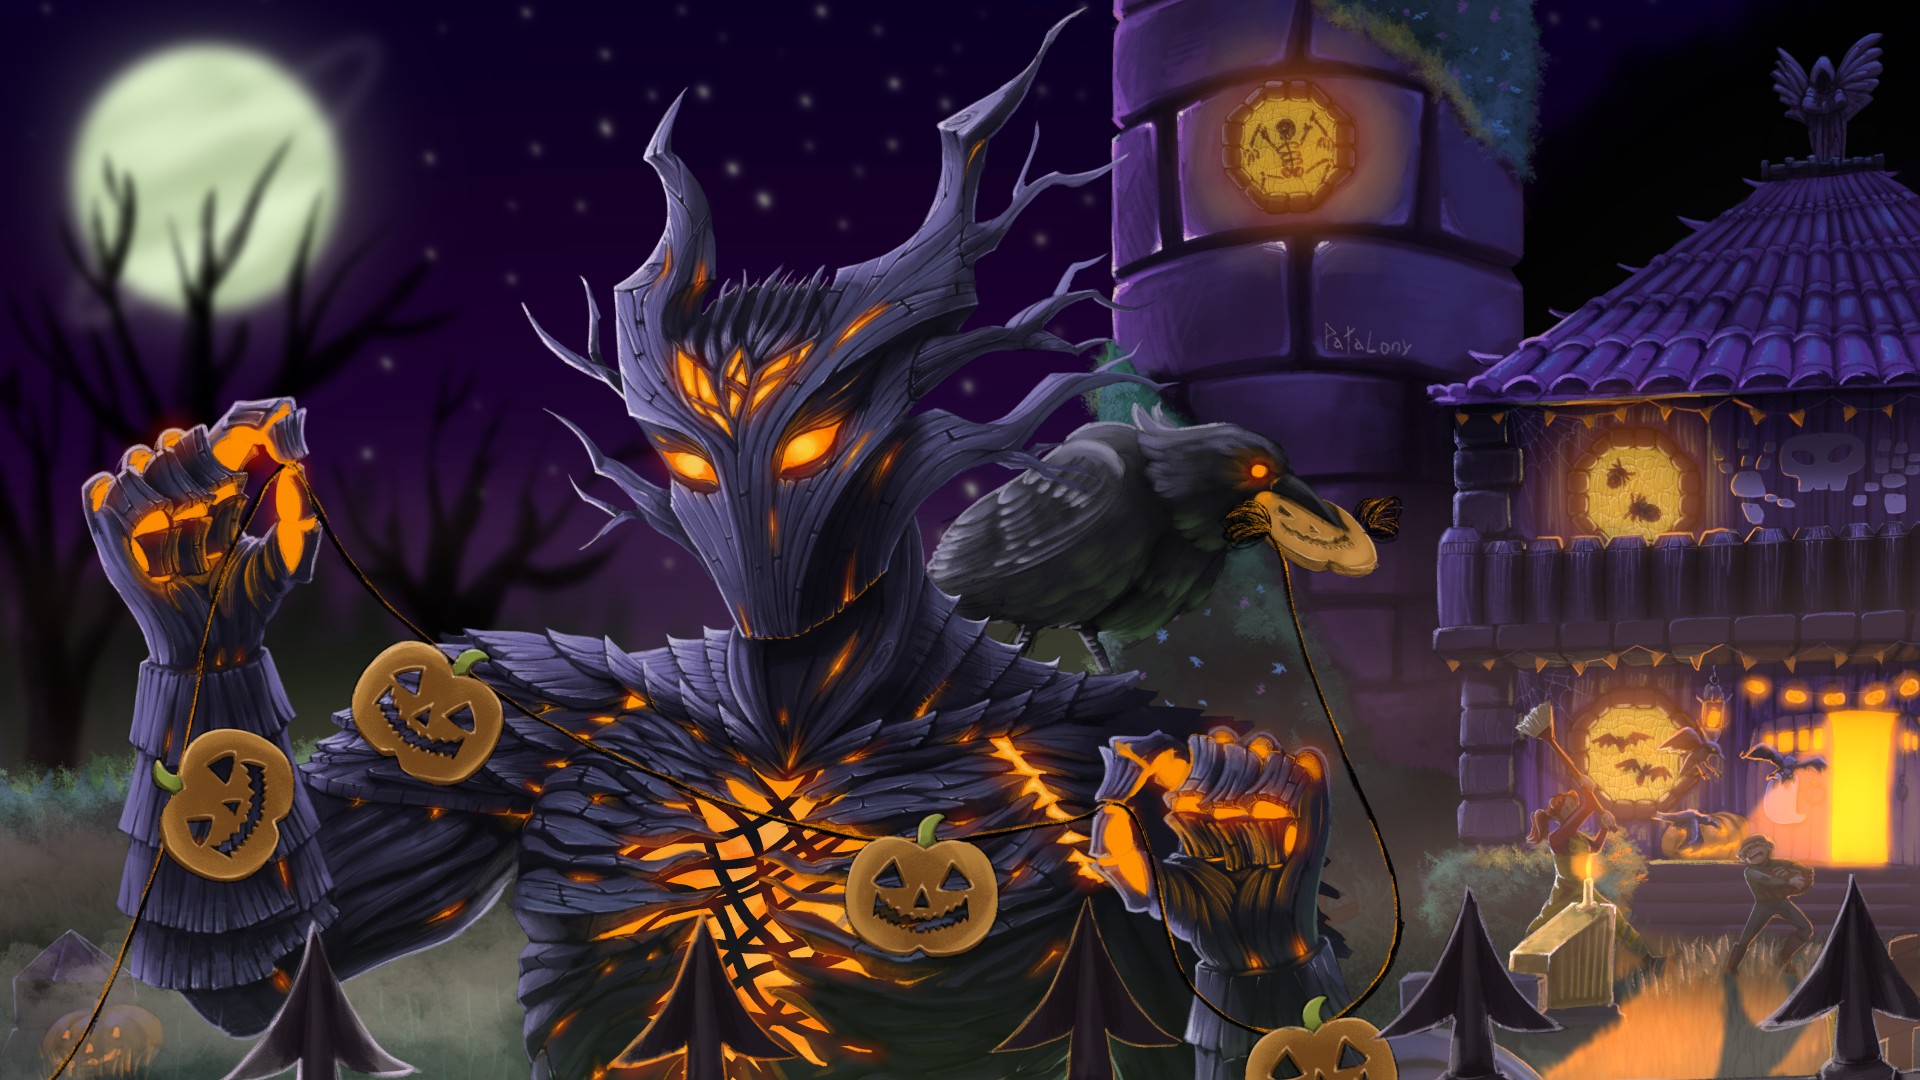 Art inspiré de Terraria Halloween montrant une figure ressemblant à un chevalier noir avec une lueur orange en lui